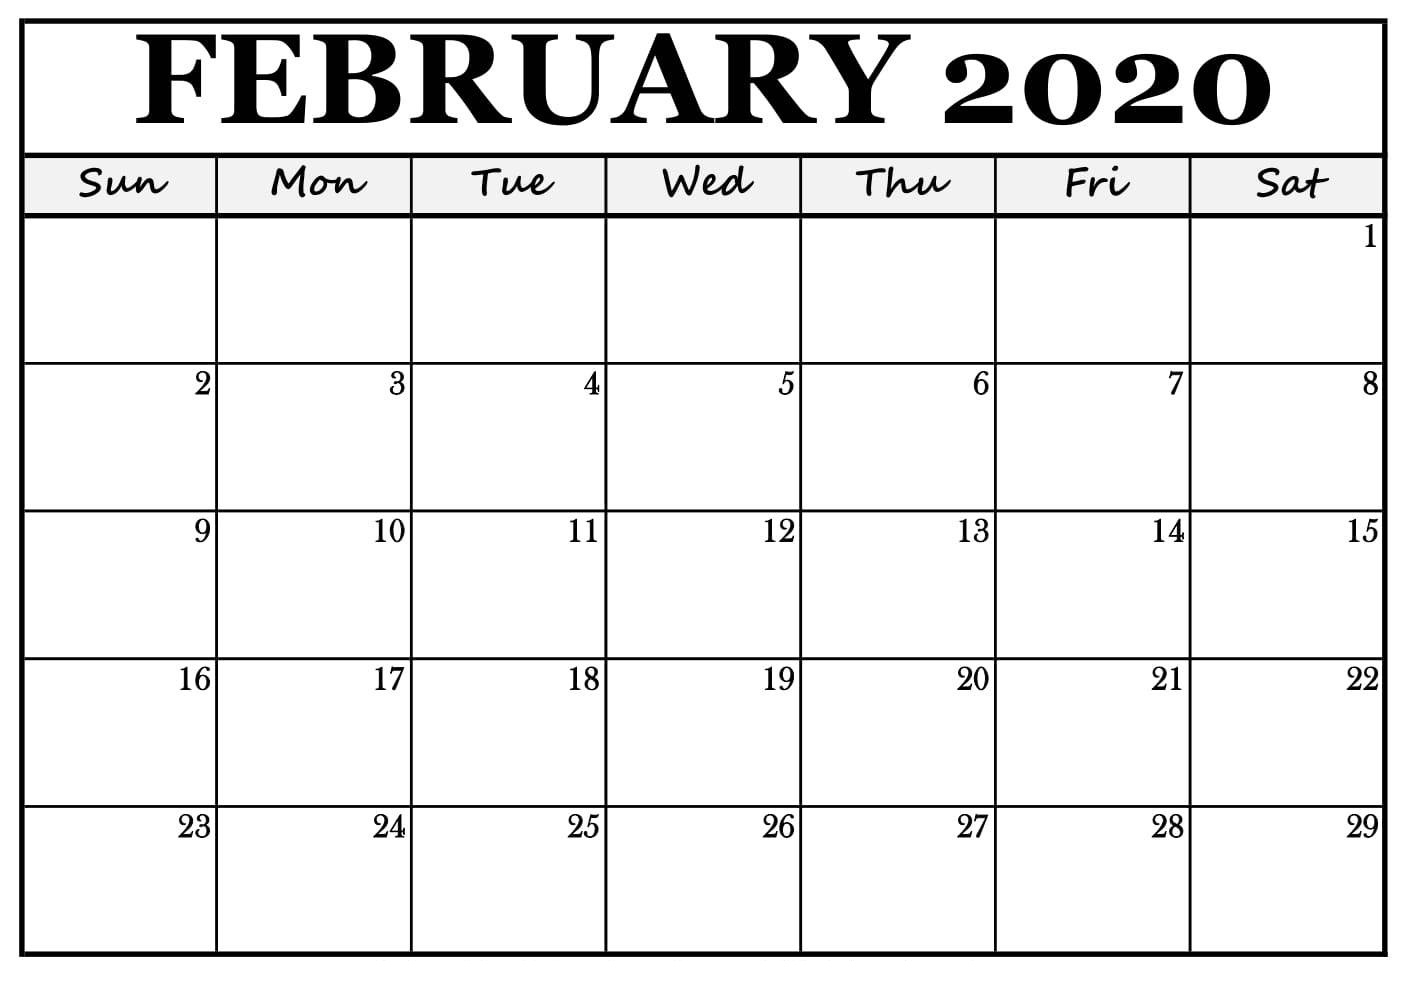 February 2020 Calendar Nz (New Zealand) - 2019 Calendars For